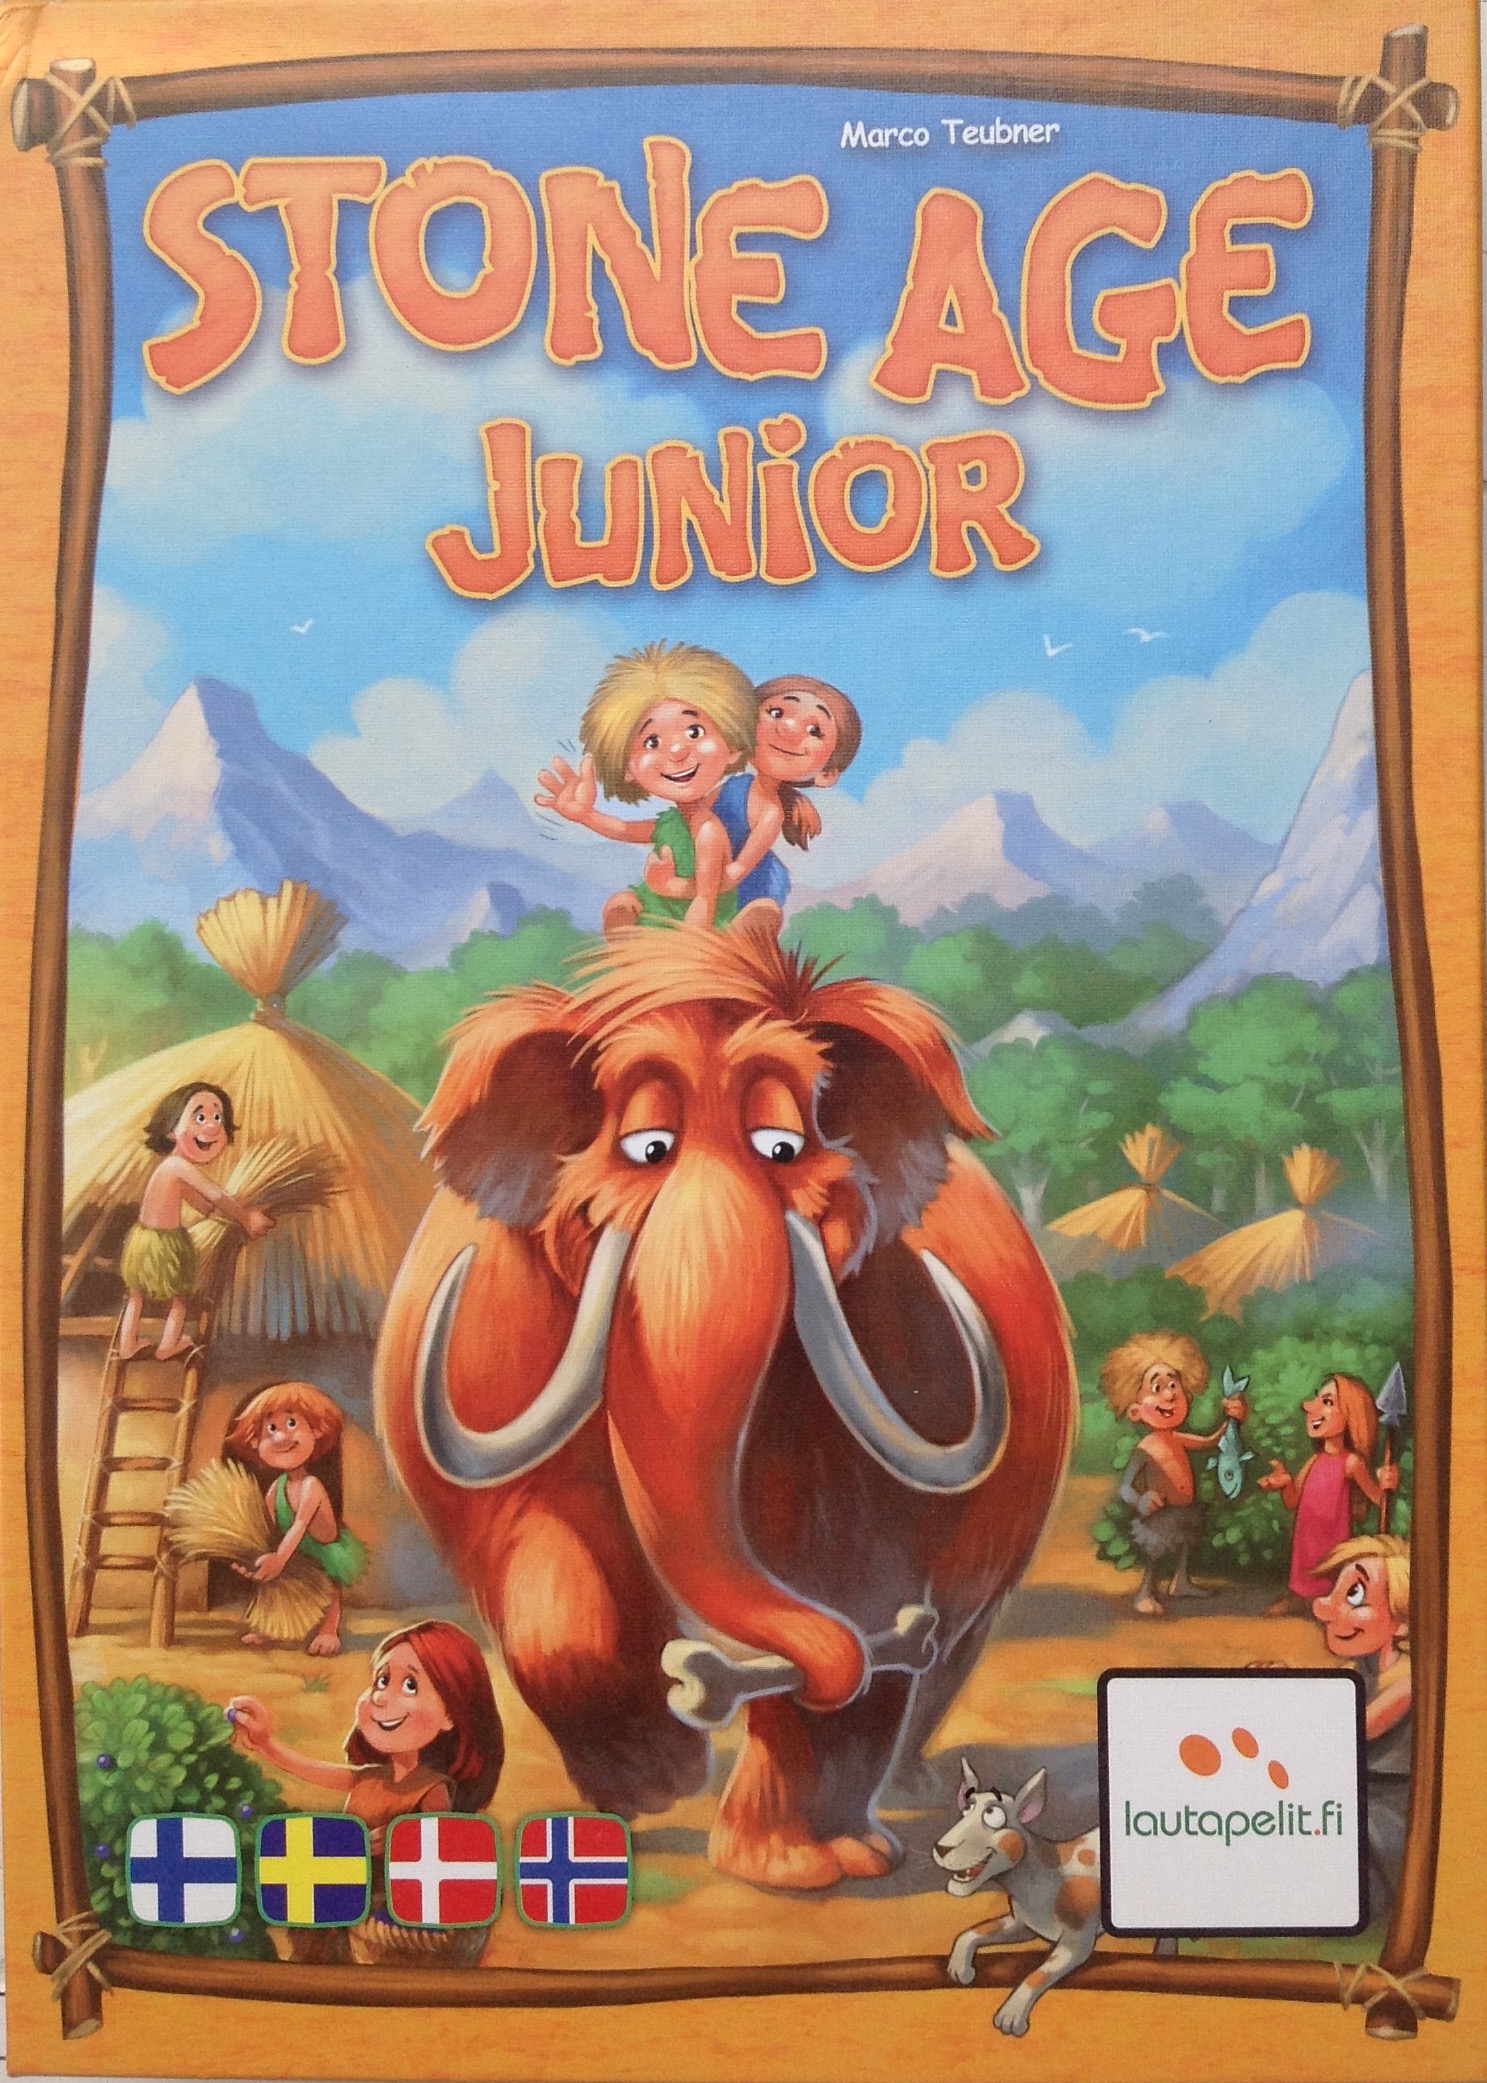 Stone Age junior